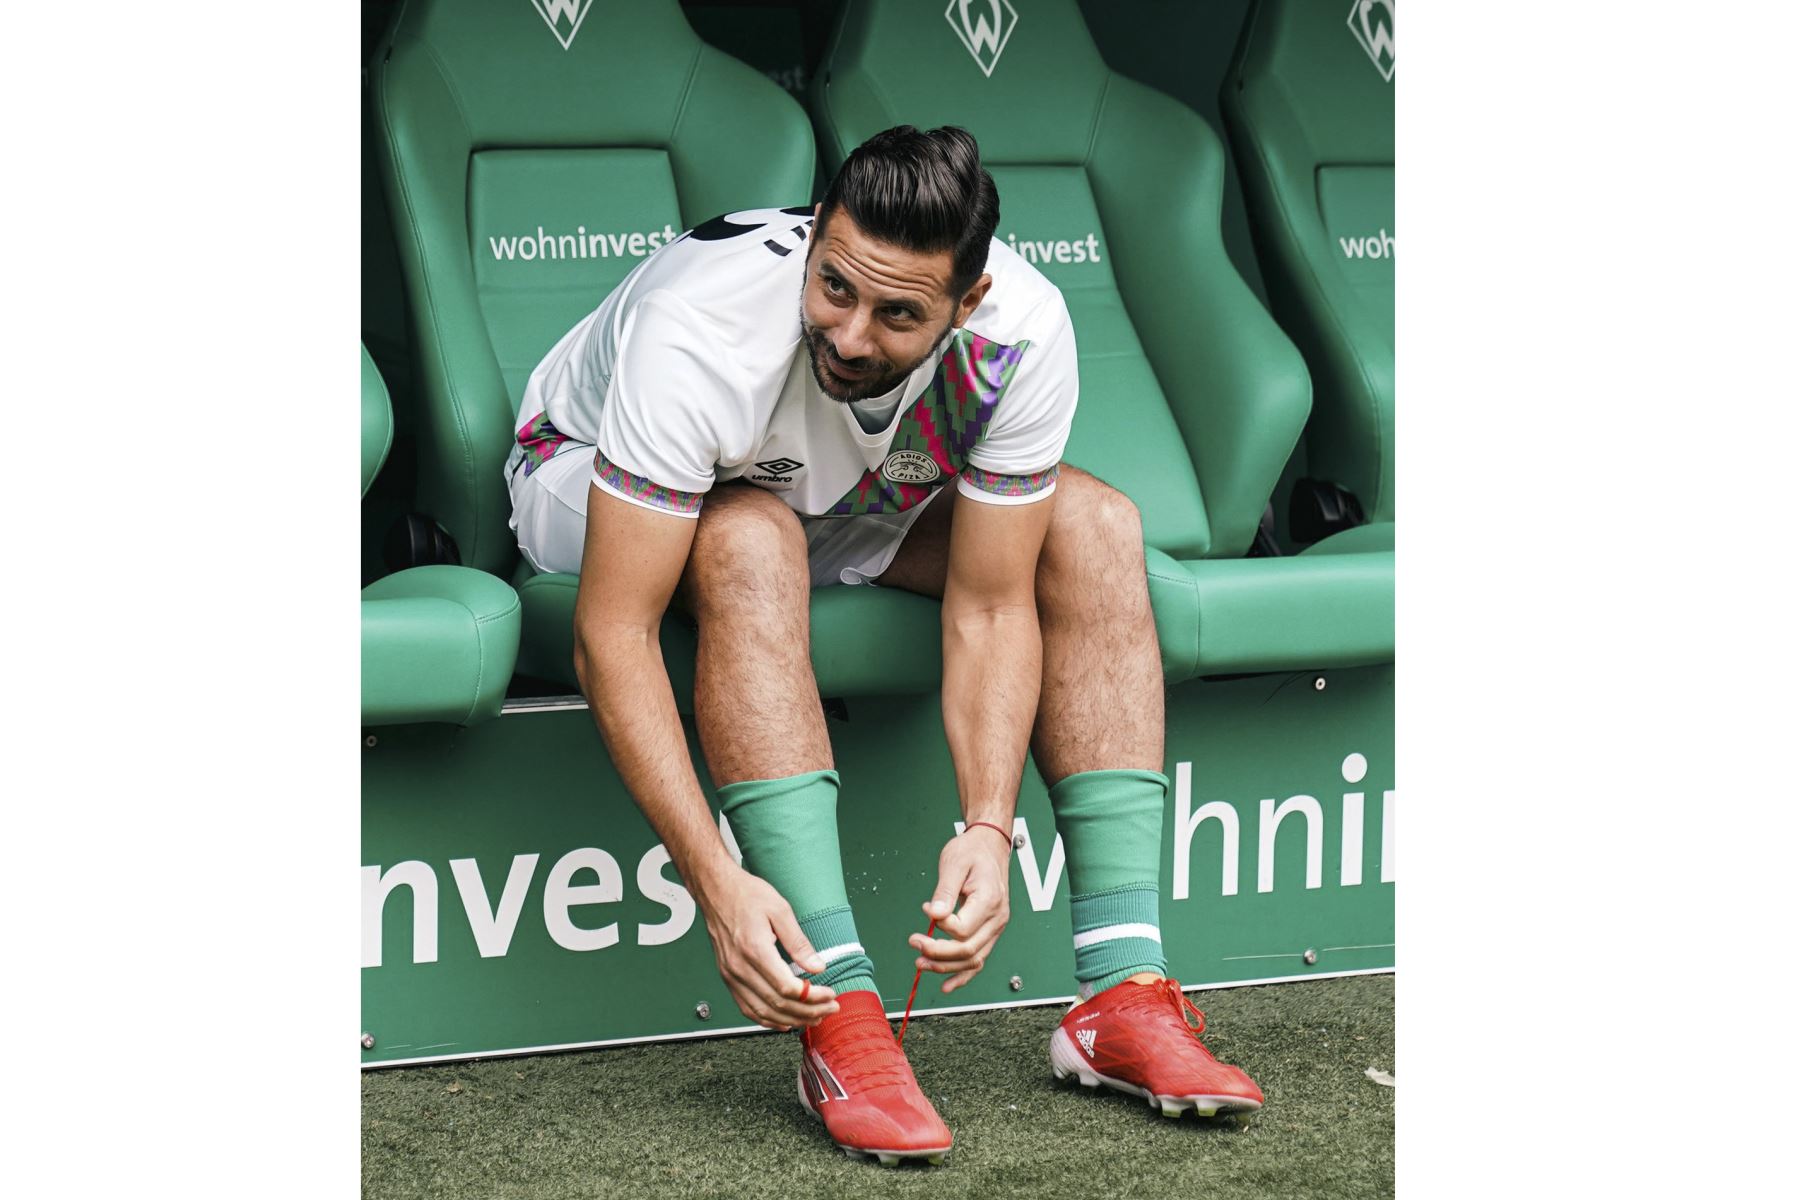 El futbolista peruano Claudio Pizarro se despidió a lo grande hoy jugando un emotivo partido ante miles de hinchas en el Weserstadion de Bremen, que corearon su nombre y lo ovacionaron como uno de los mejores jugadores extranjeros en la historia del balompié alemán. Foto: Difusión